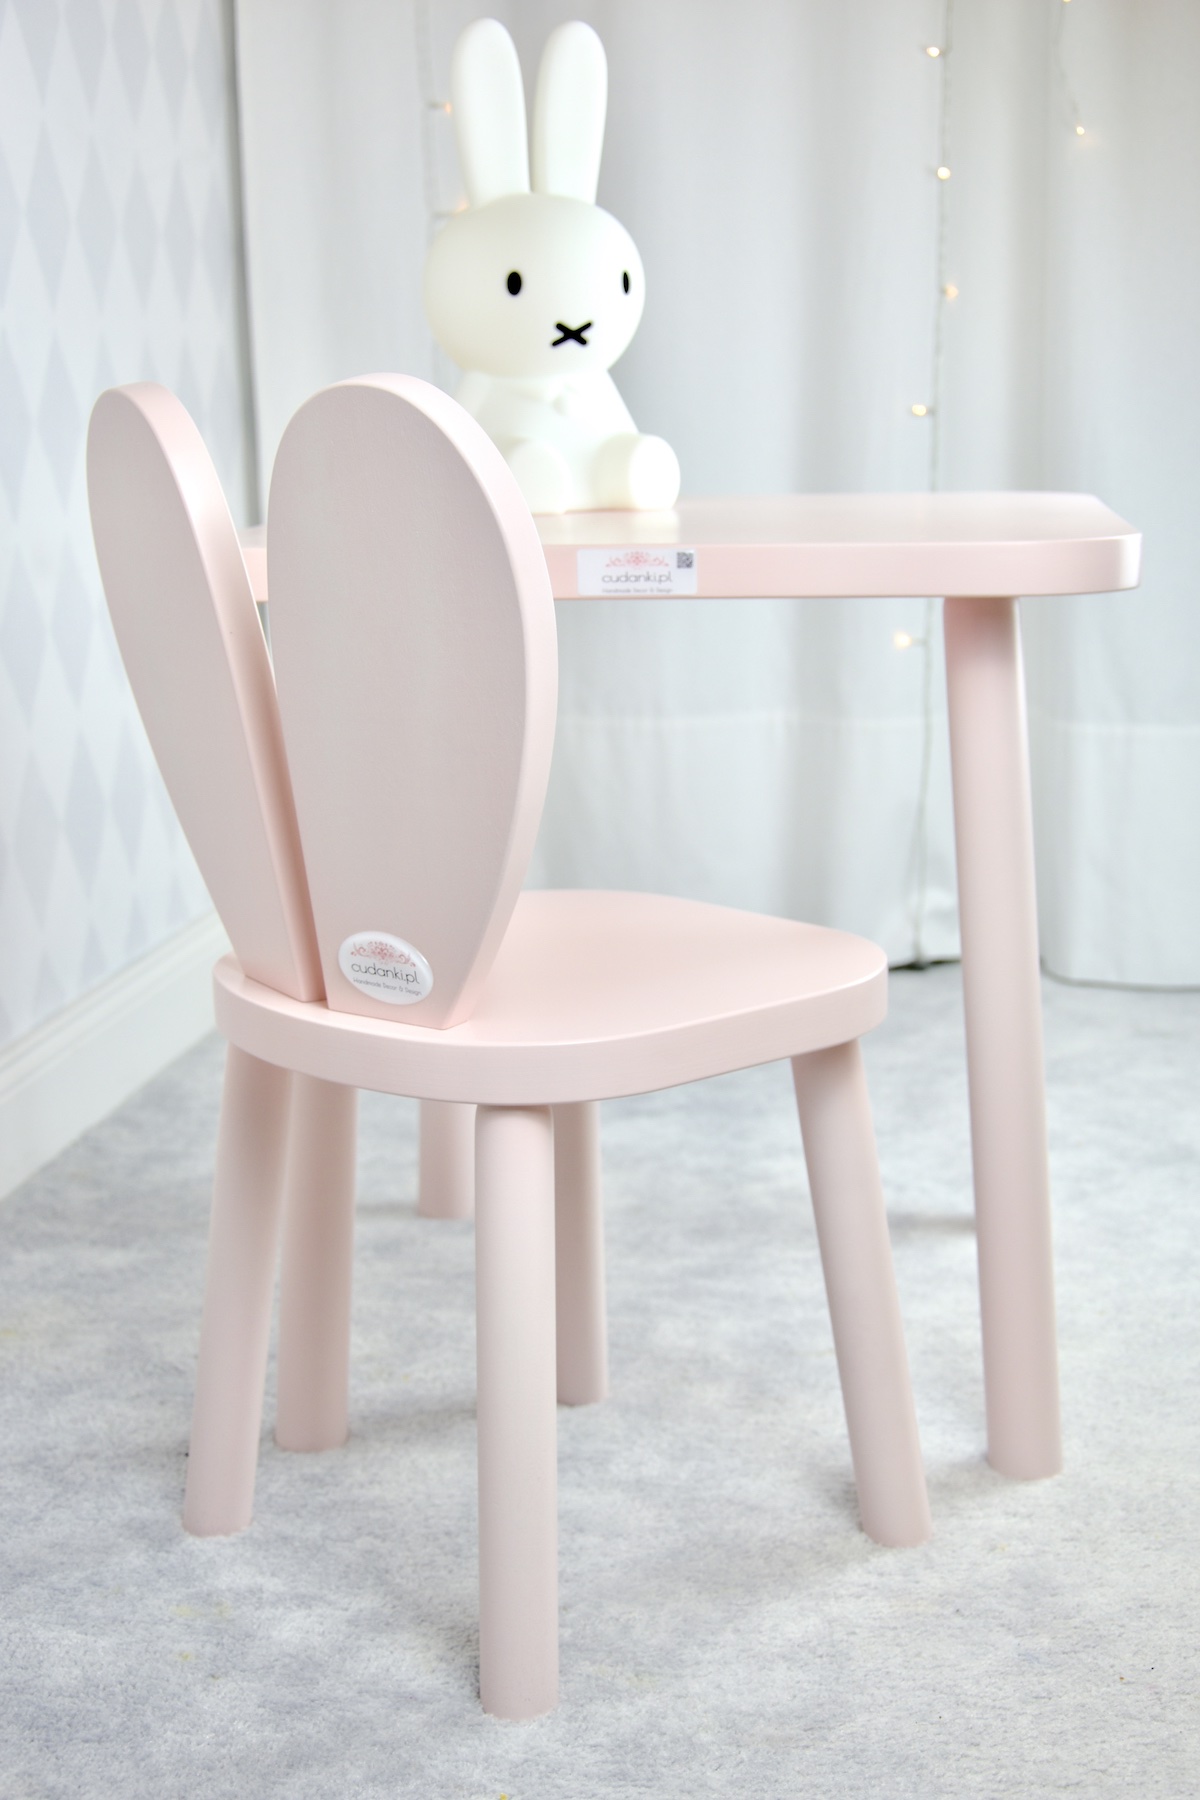 prosty drewniany stolik róż pink mięta dla dzieci